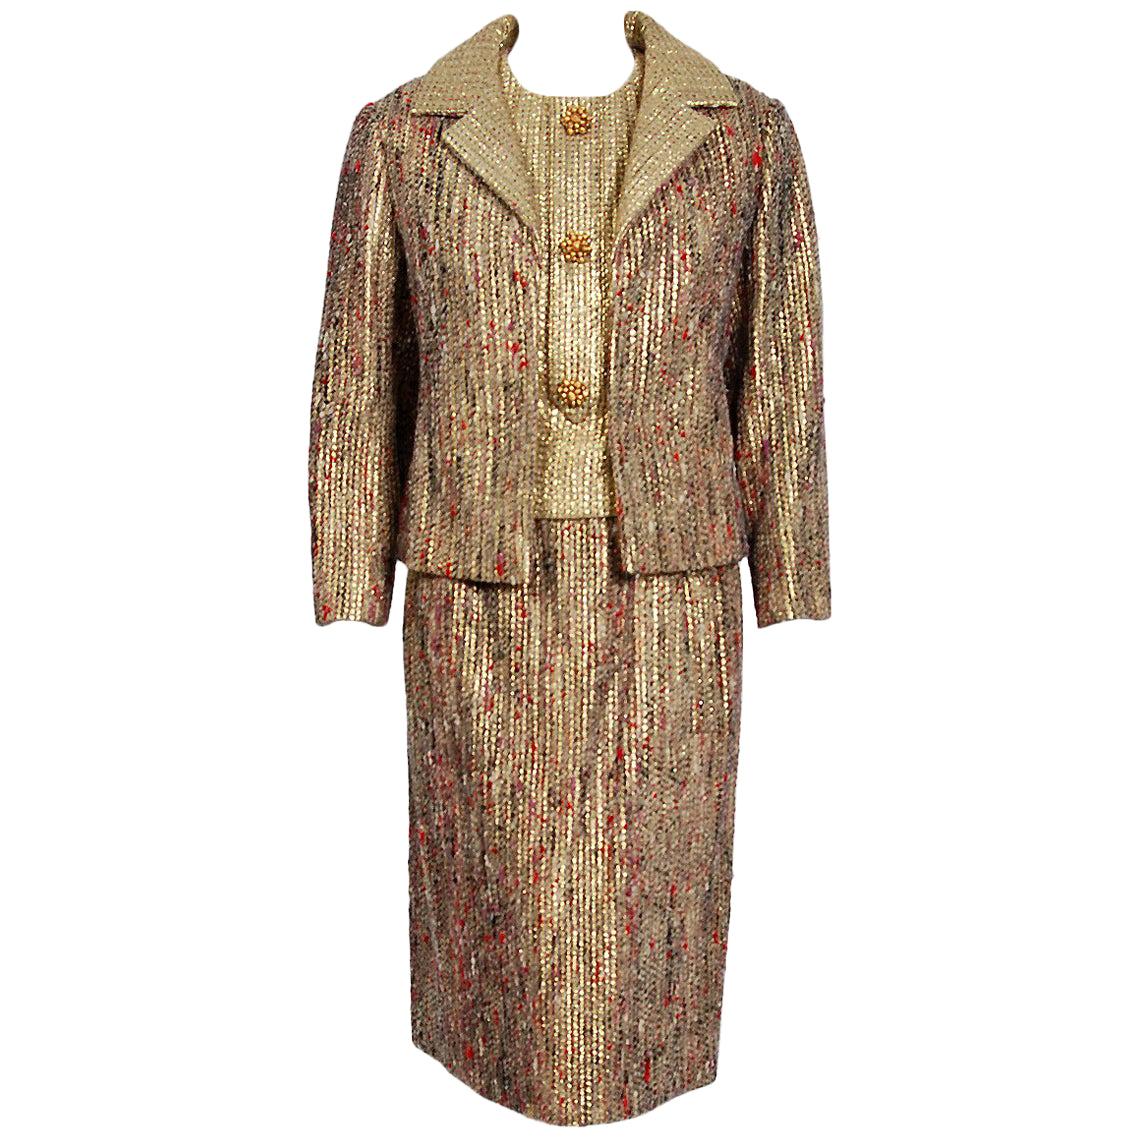 Vintage 1963 Christian Dior Gold Lamé & Texturierte Wolle Dokumentiert Kleid Anzug